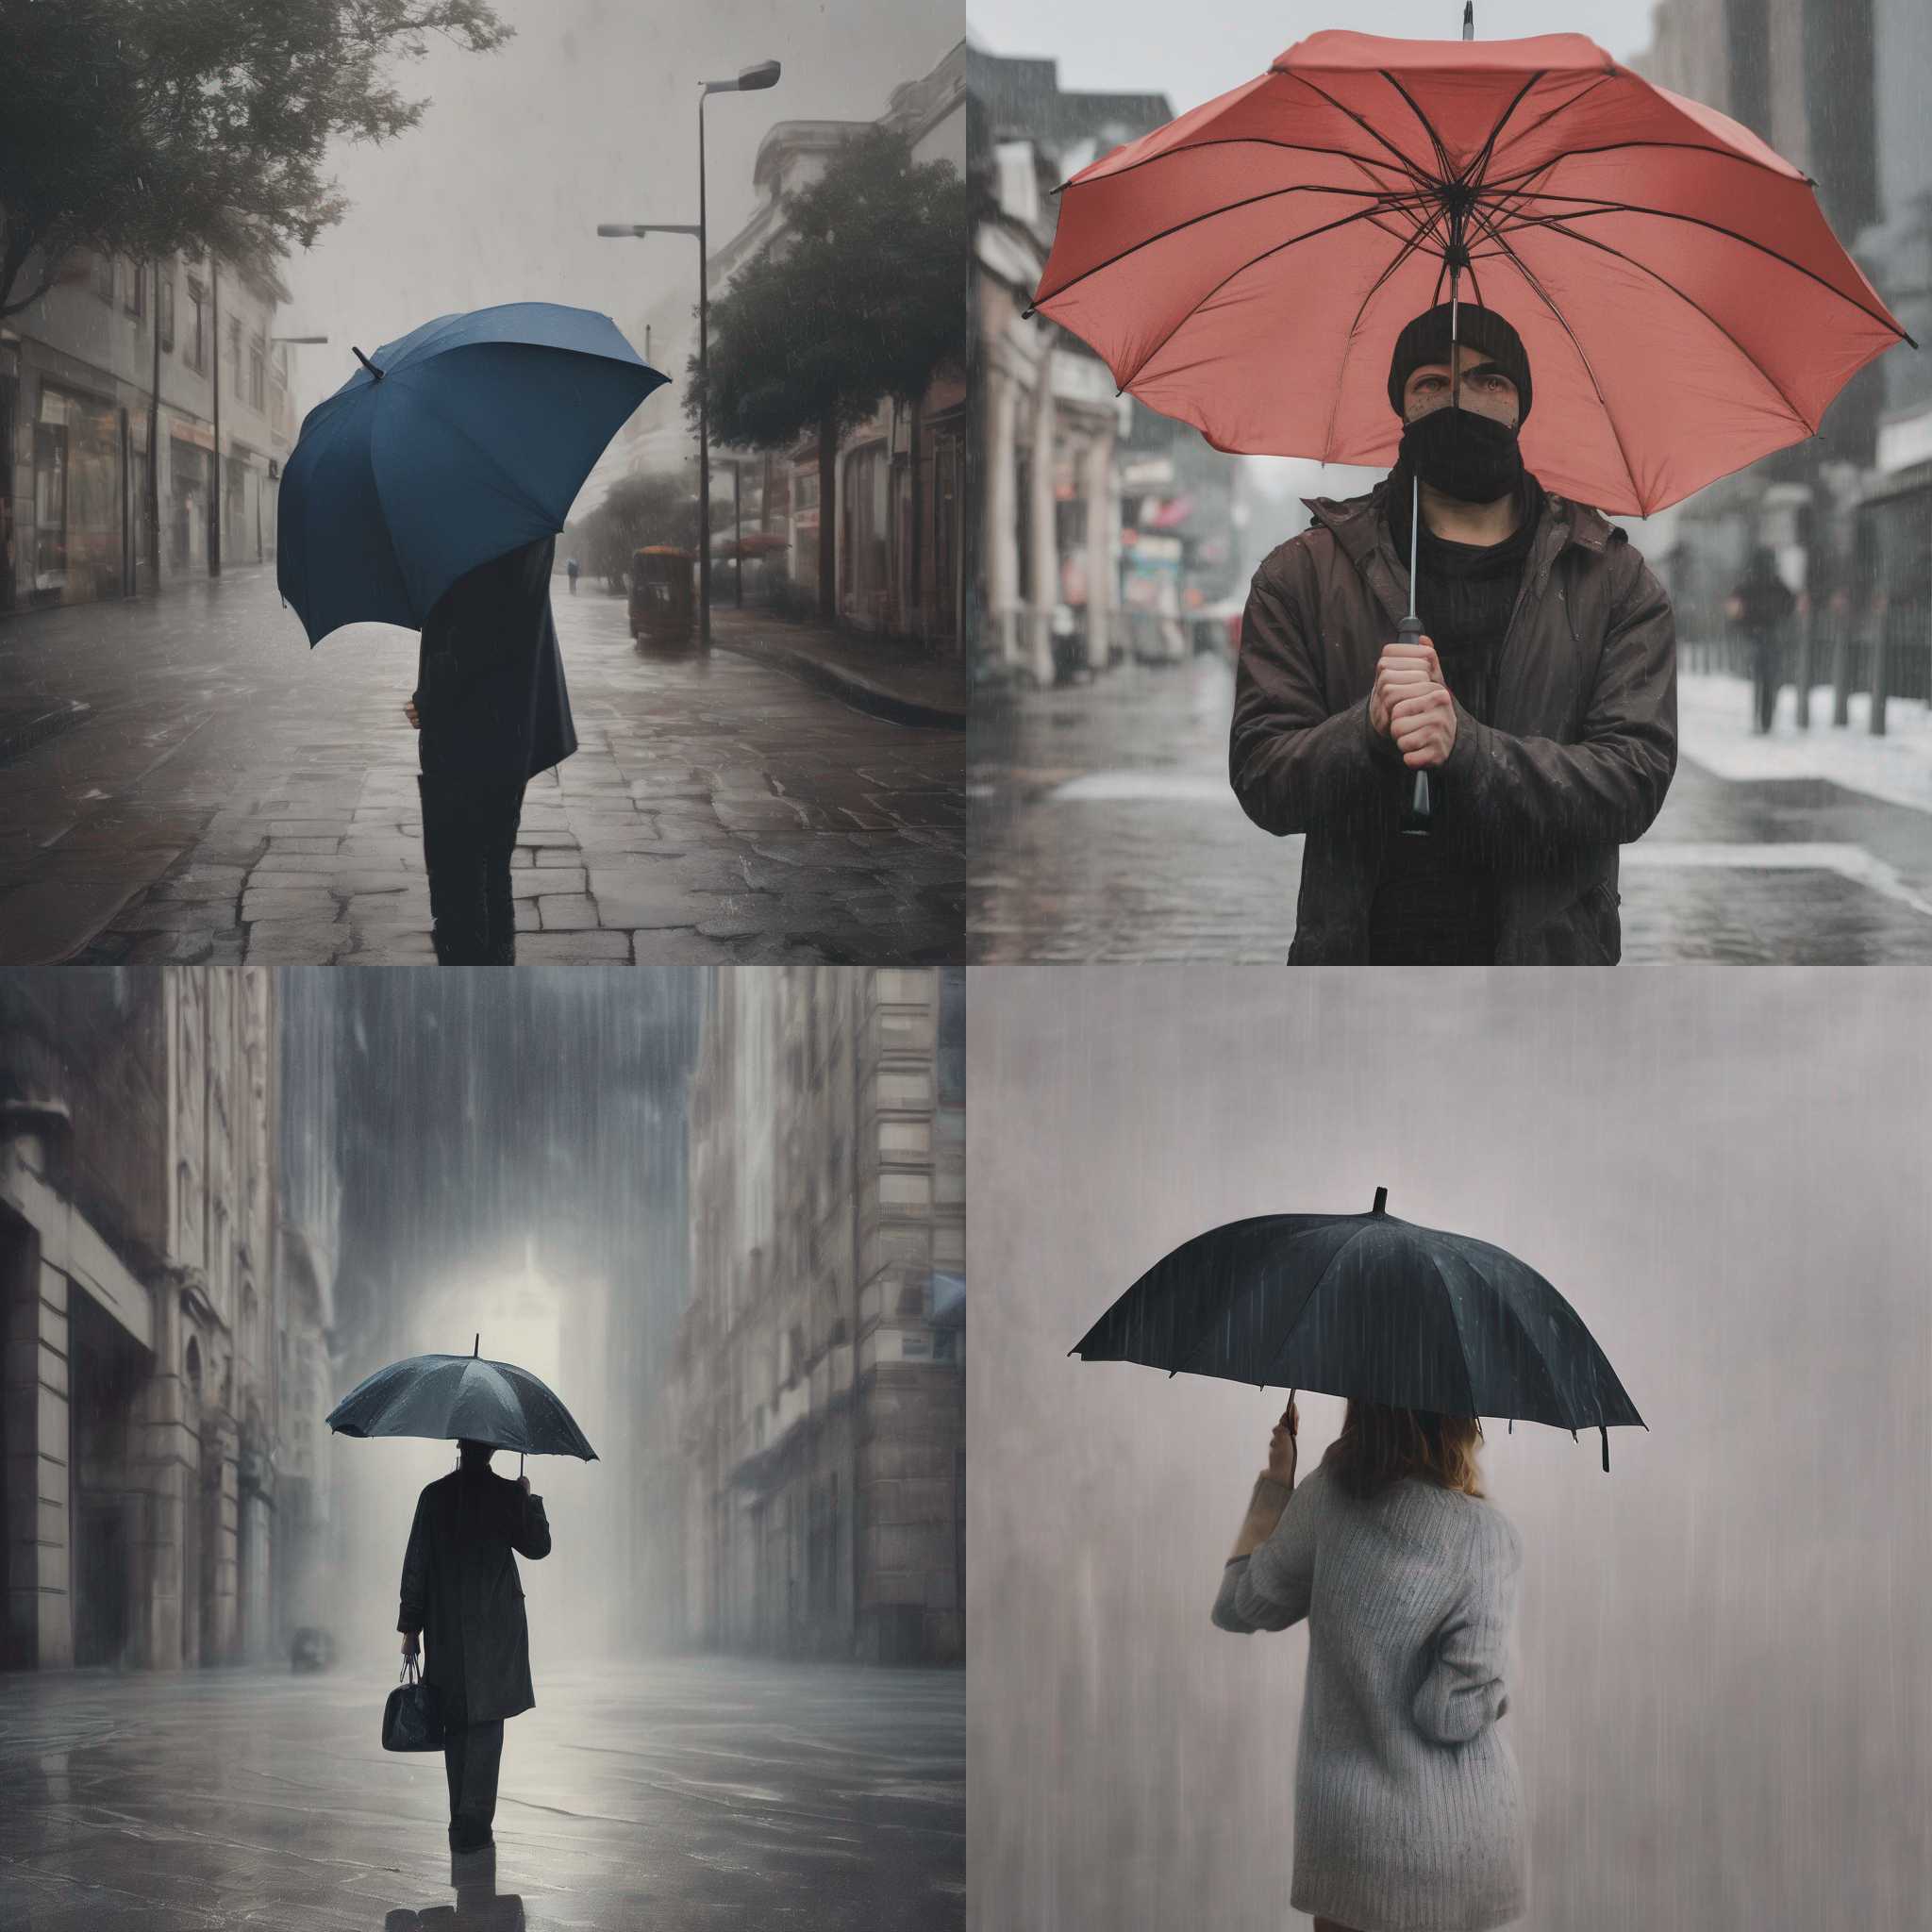 A person holding an umbrella